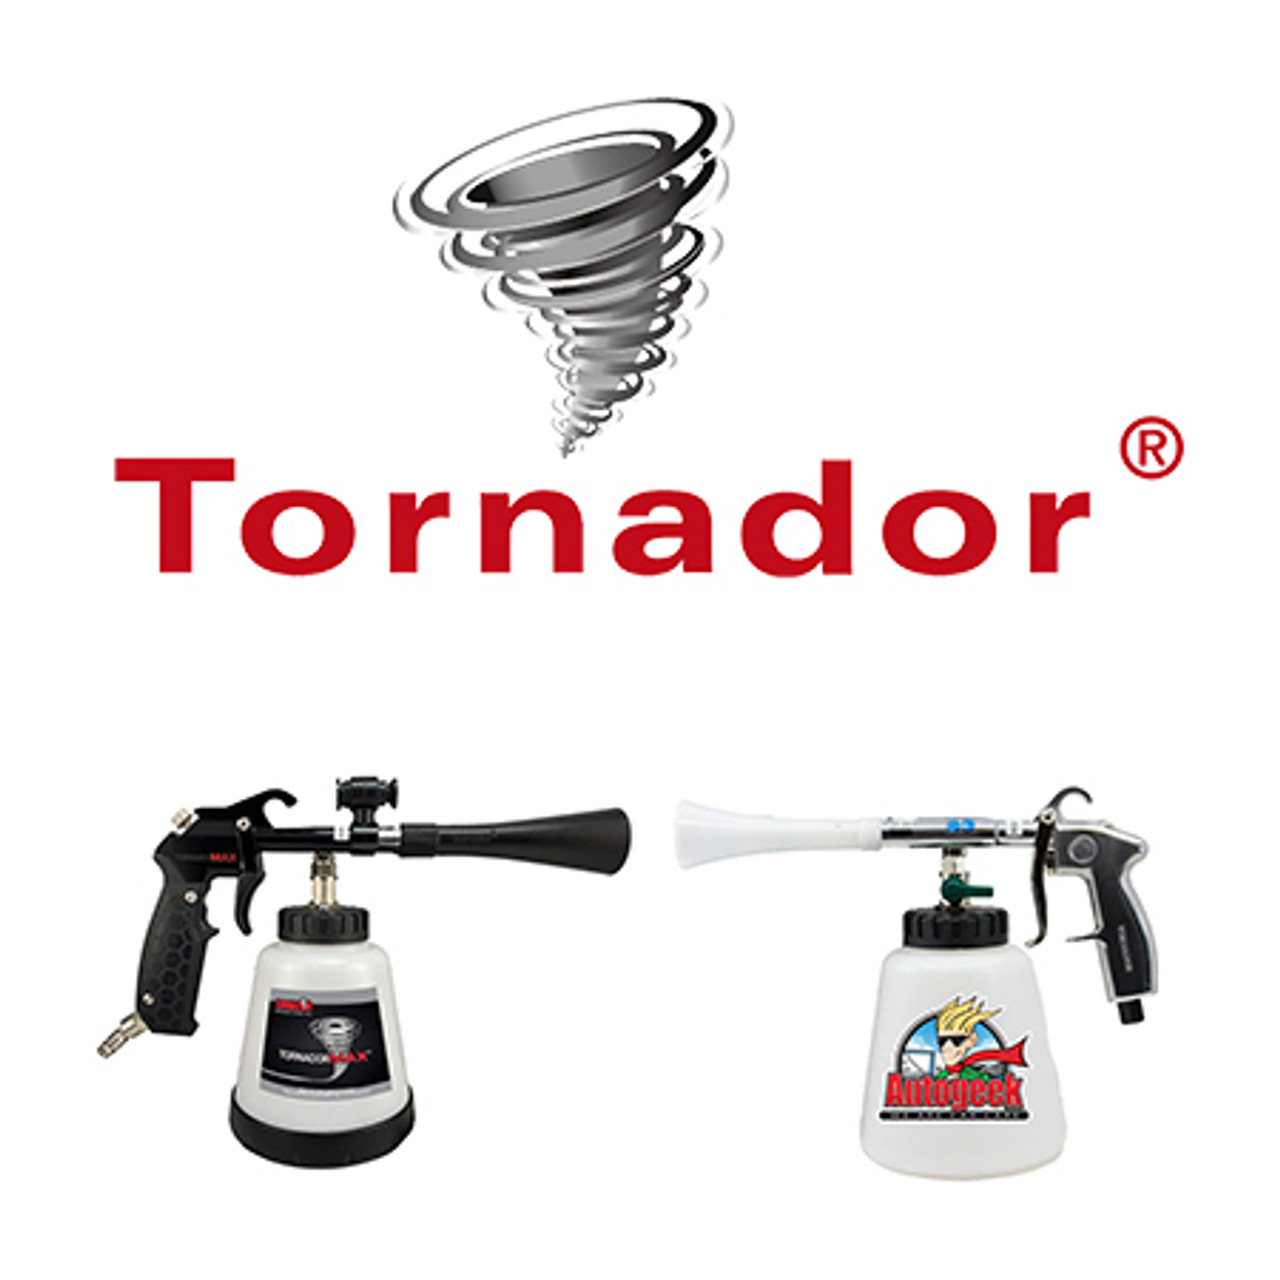 Tornador Air Foamers & Detailing Tools 